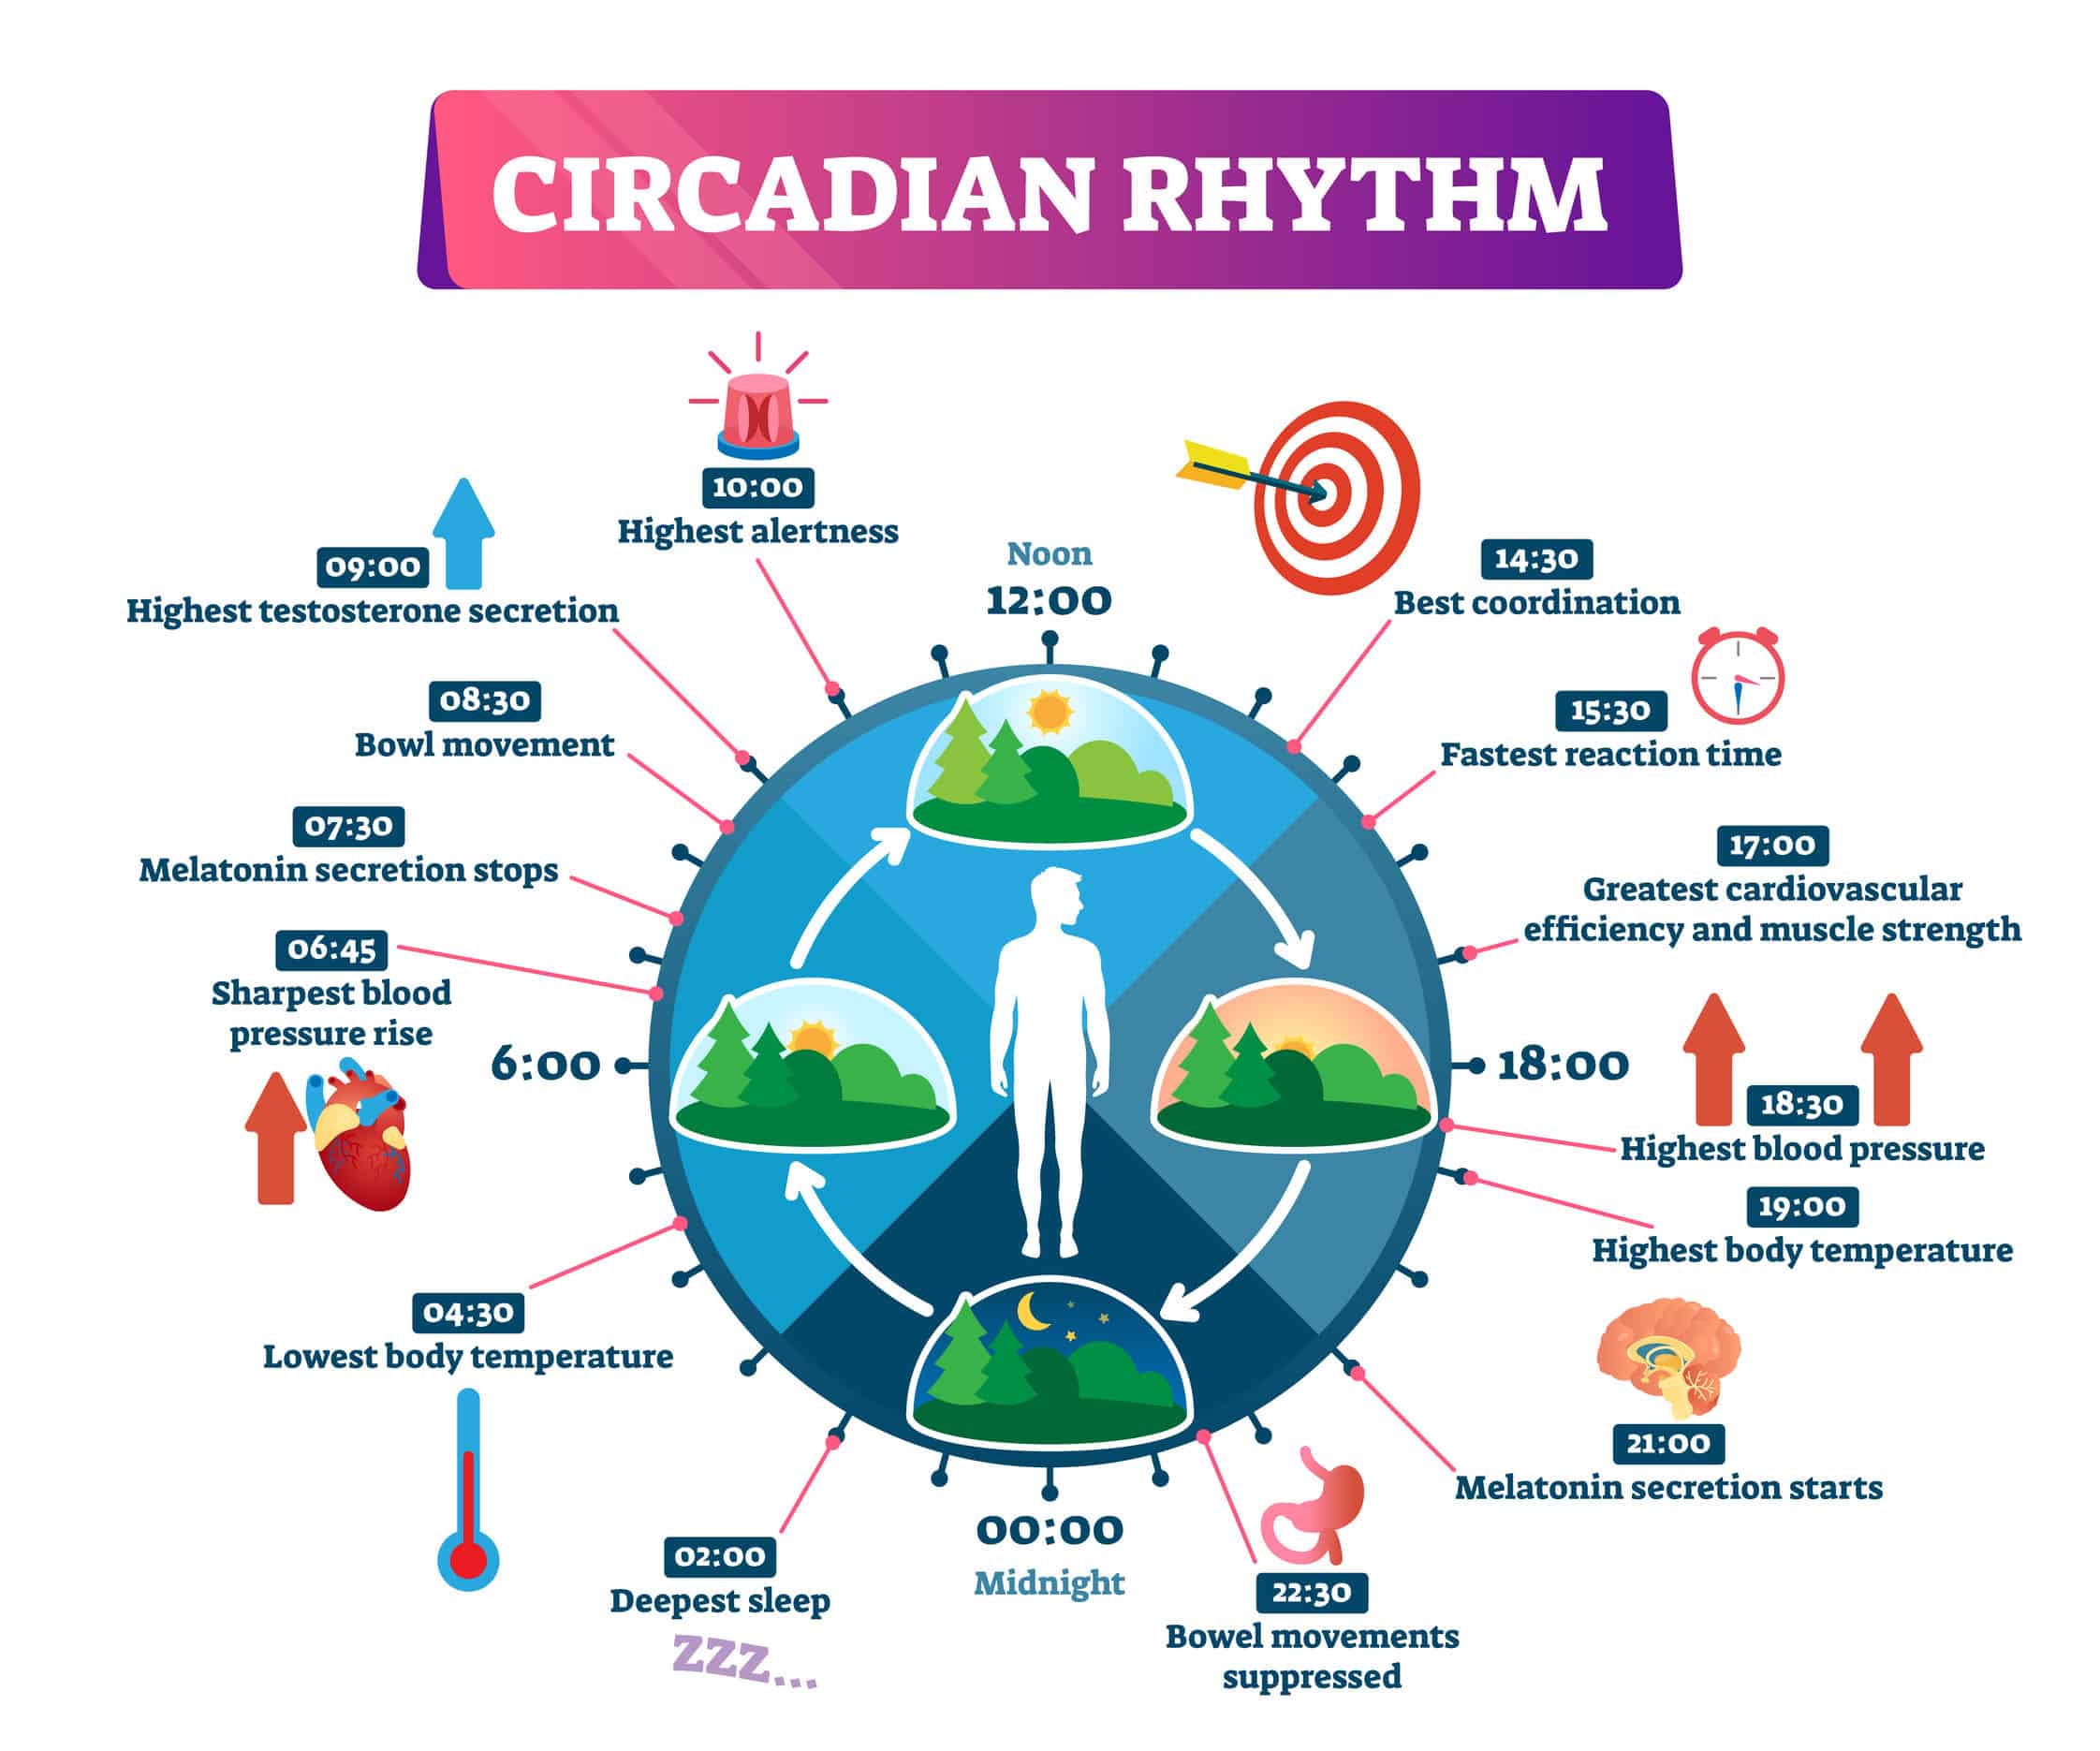 Circadian rhythm system